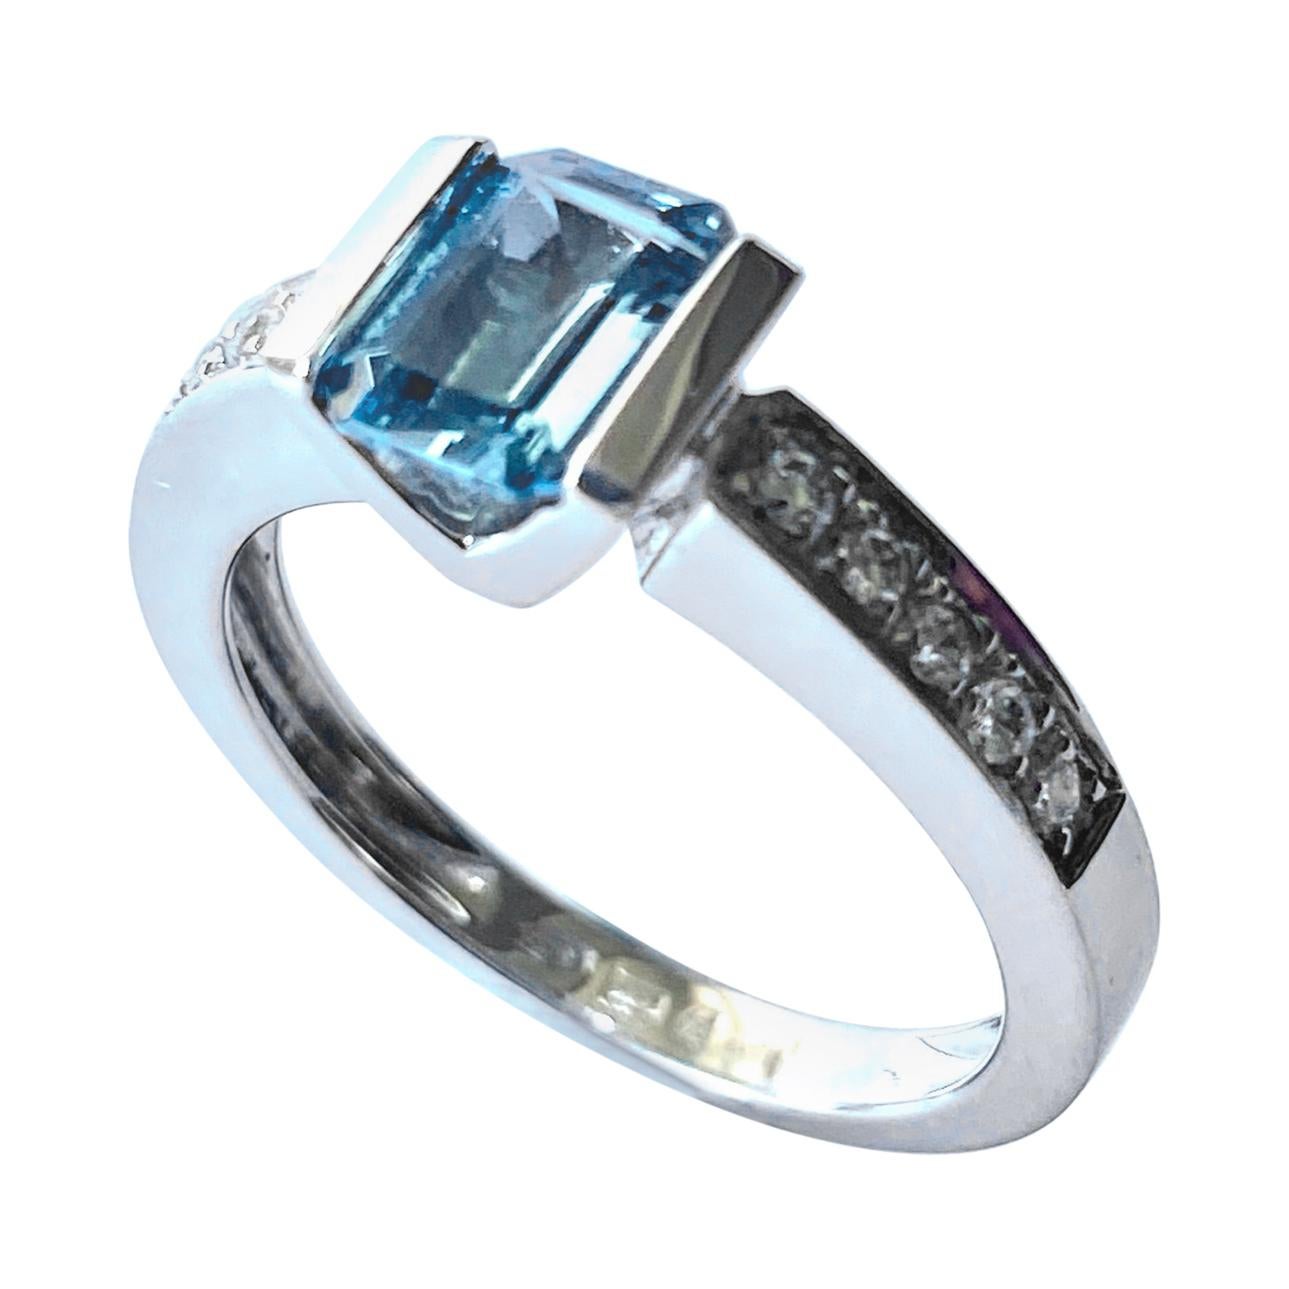 Aquamarine - Diamonds White Gold Ring, Alberti Gioielli, Valenza - Italy For Sale